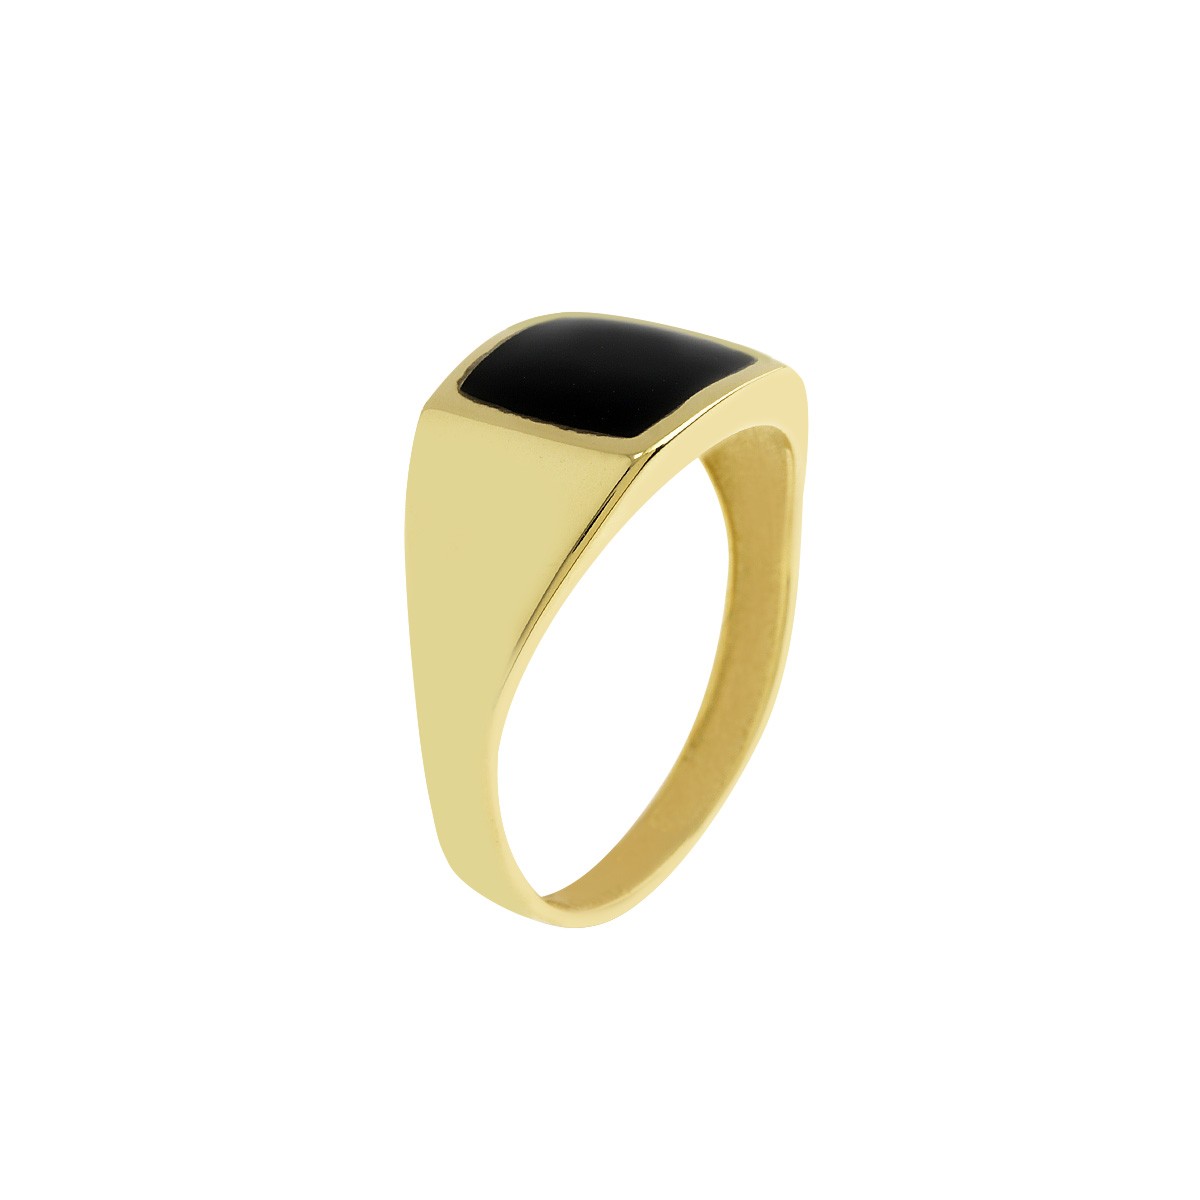 Δακτυλίδι Ανδρικό Χρυσό Κ9 με Πλάκα Κωδ: 401154